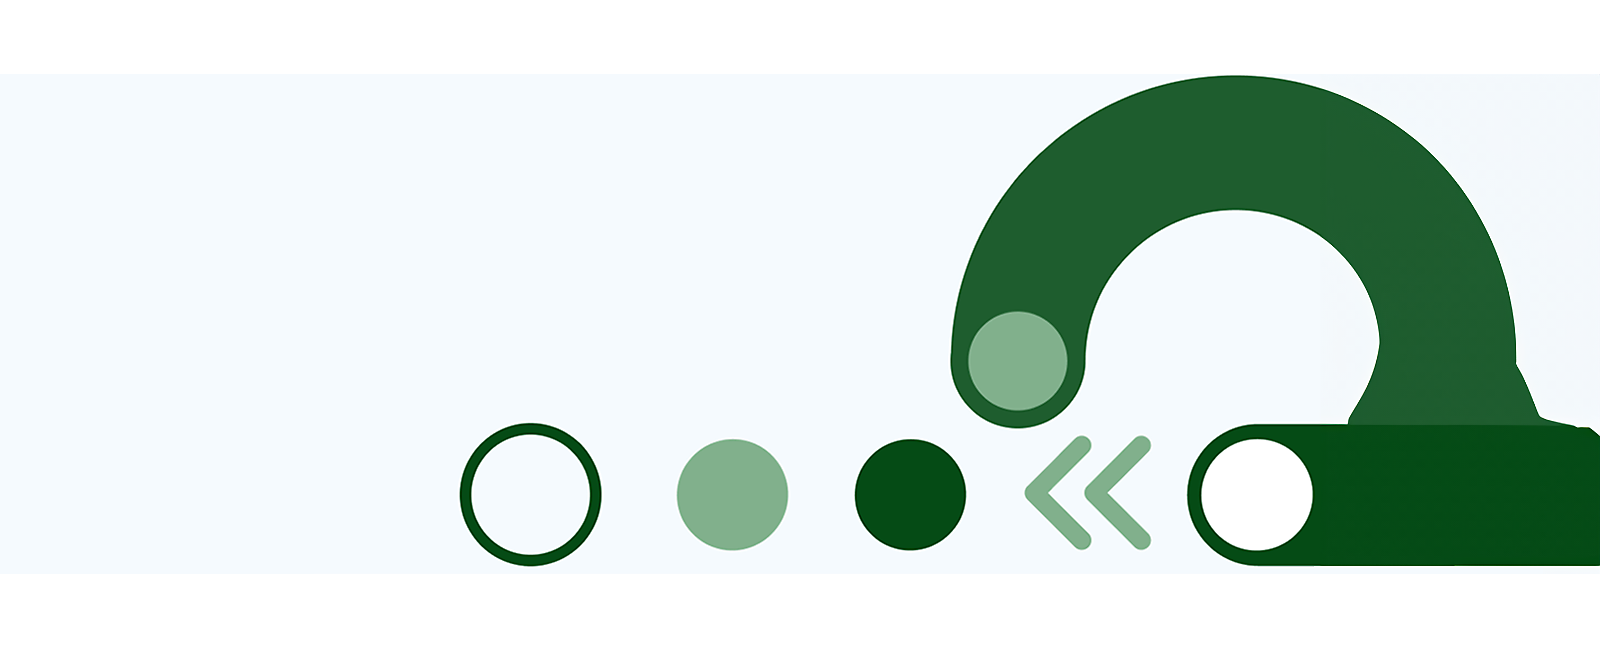 Forme și linii abstracte verzi pe un fundal alb.